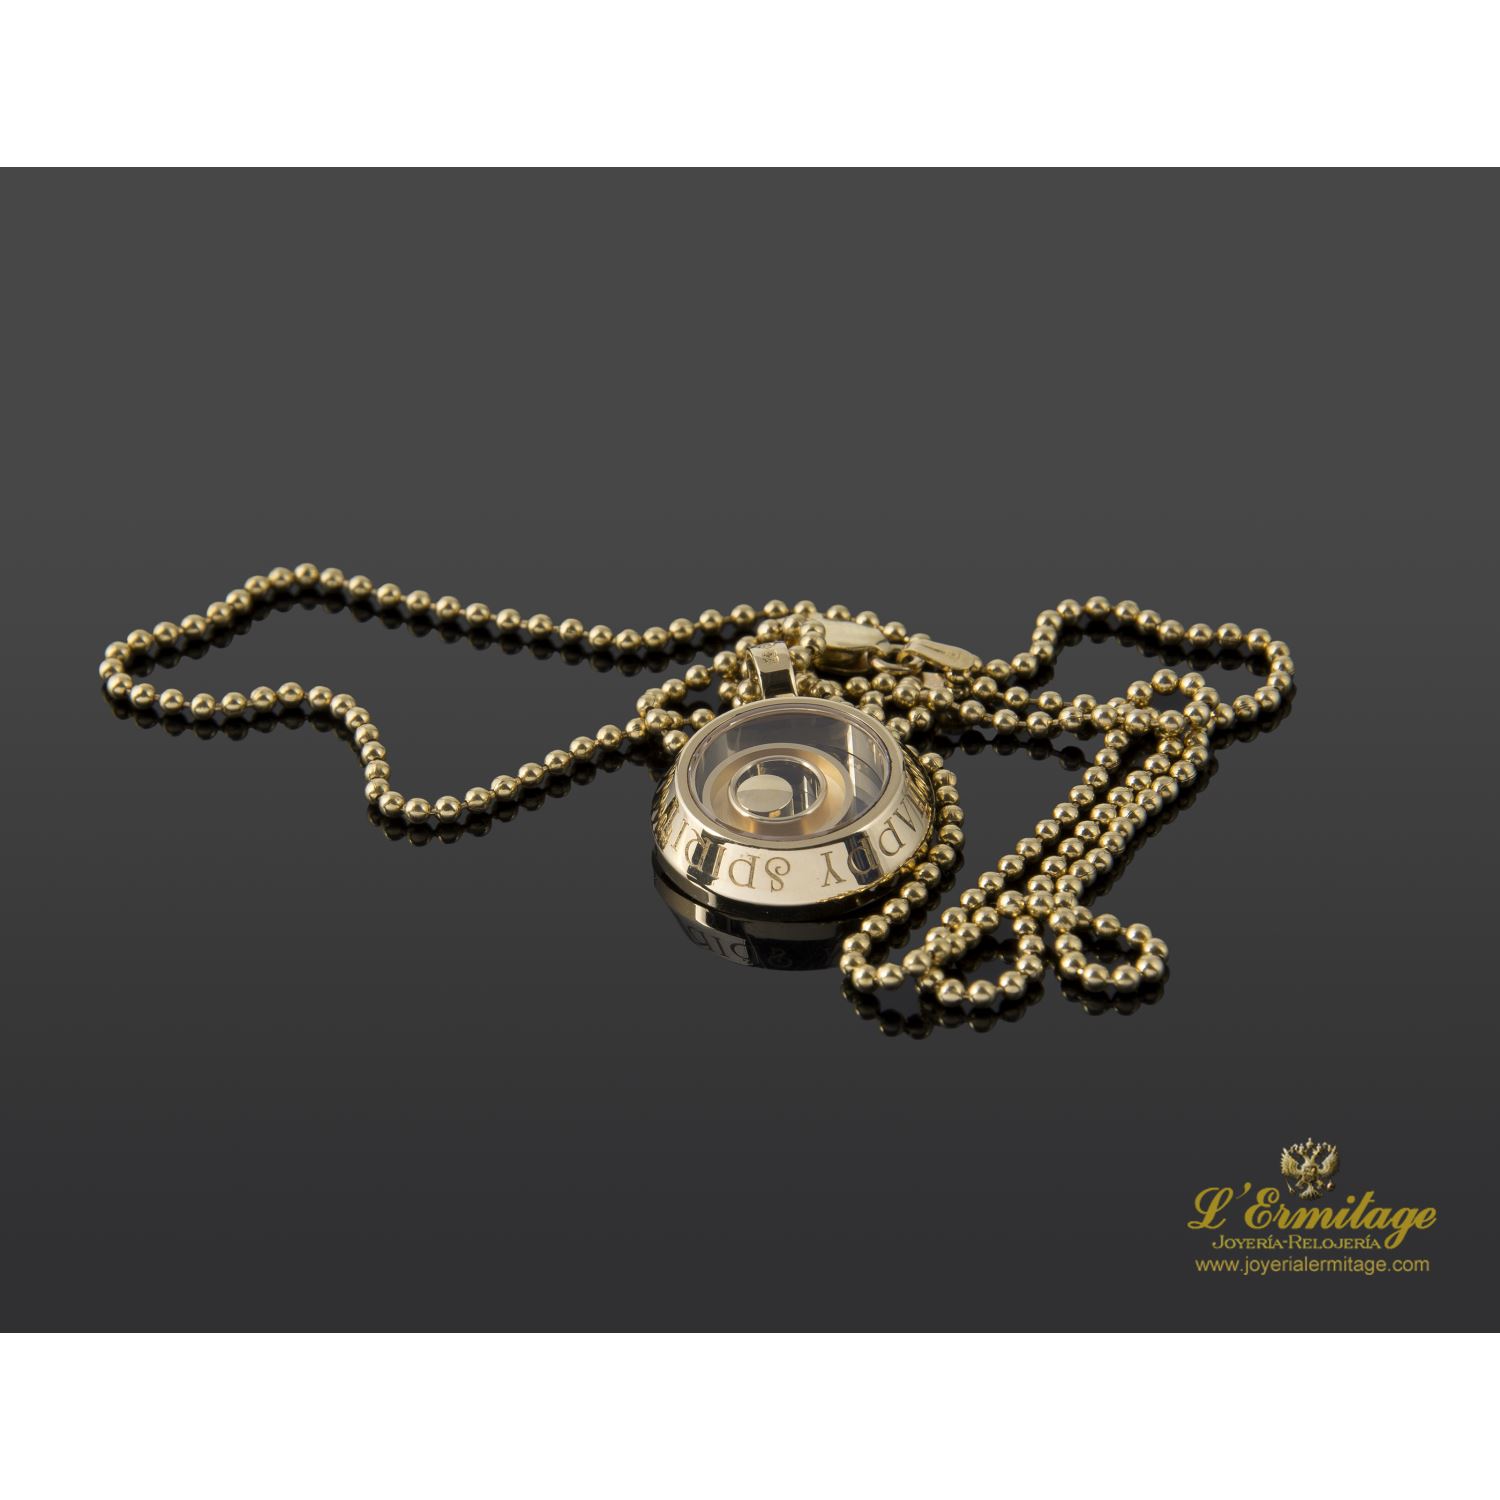 Spirit Diamond En Oro Amarillo. en oro amarillo · Compra Venta de Relojes de Lujo y Joyas ·